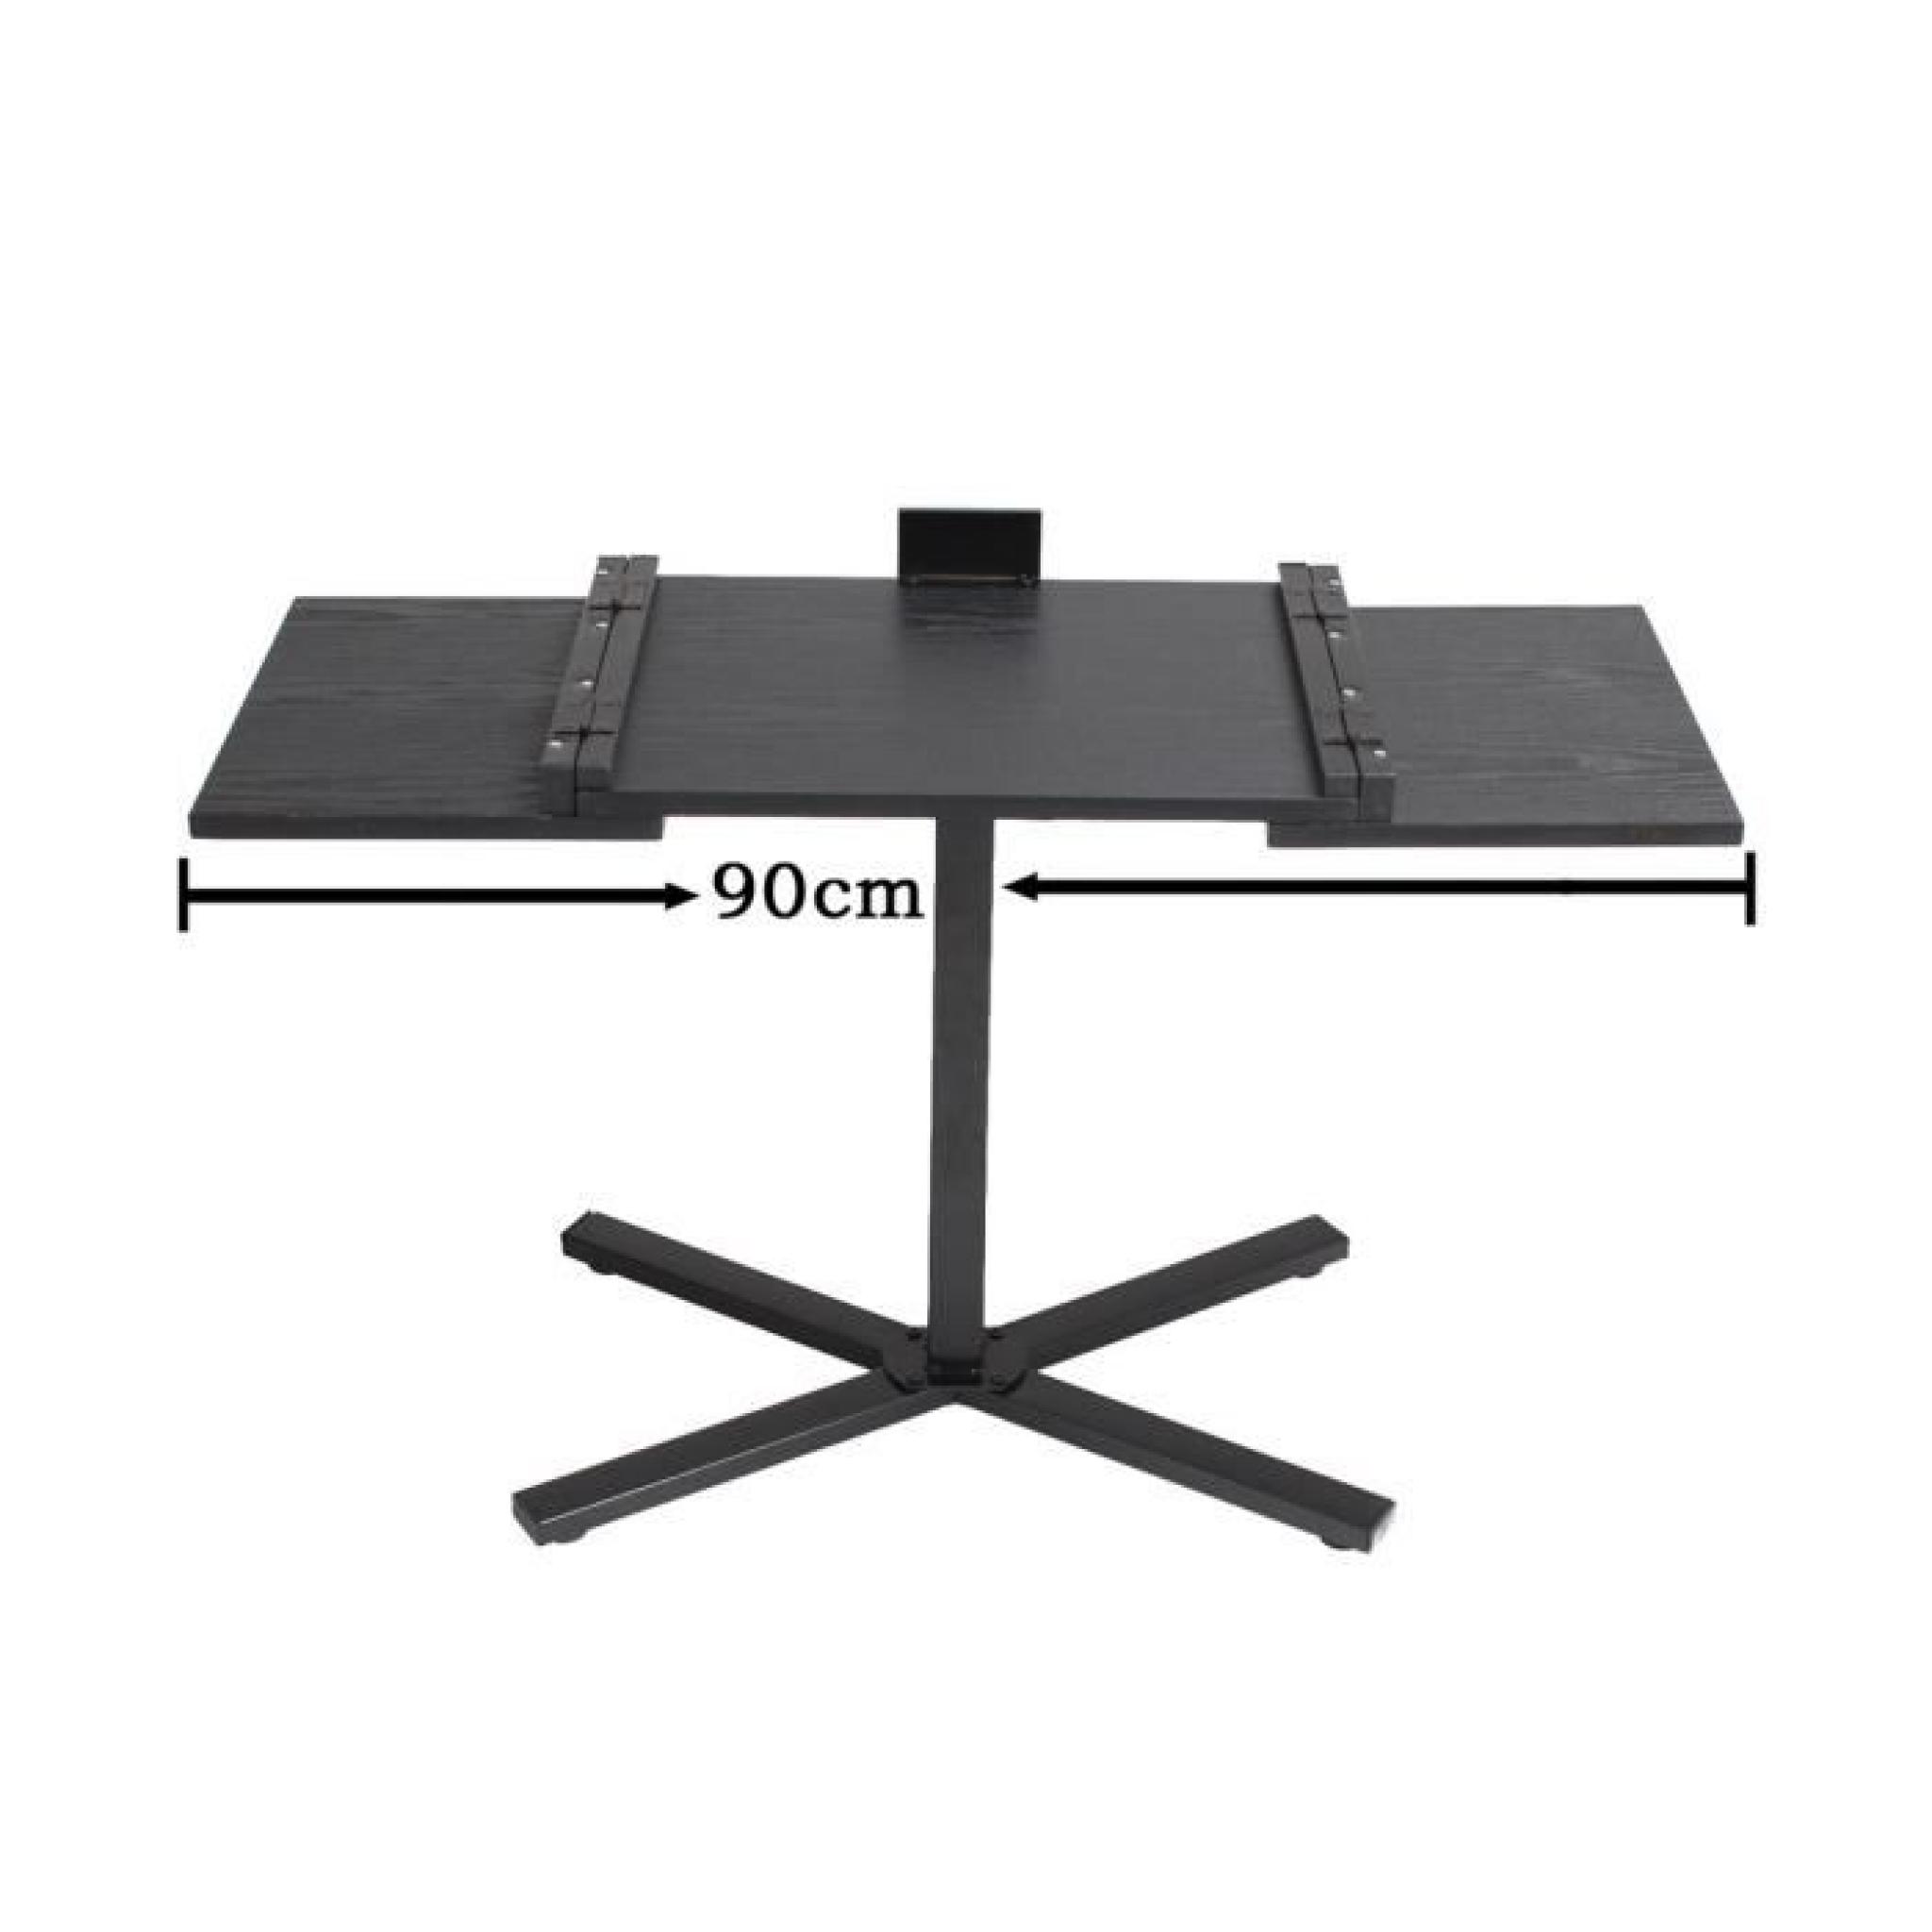 Table d'rdinateur Pliable Portable Surface Adjustable de 55 à 90cm EXPRESS pas cher